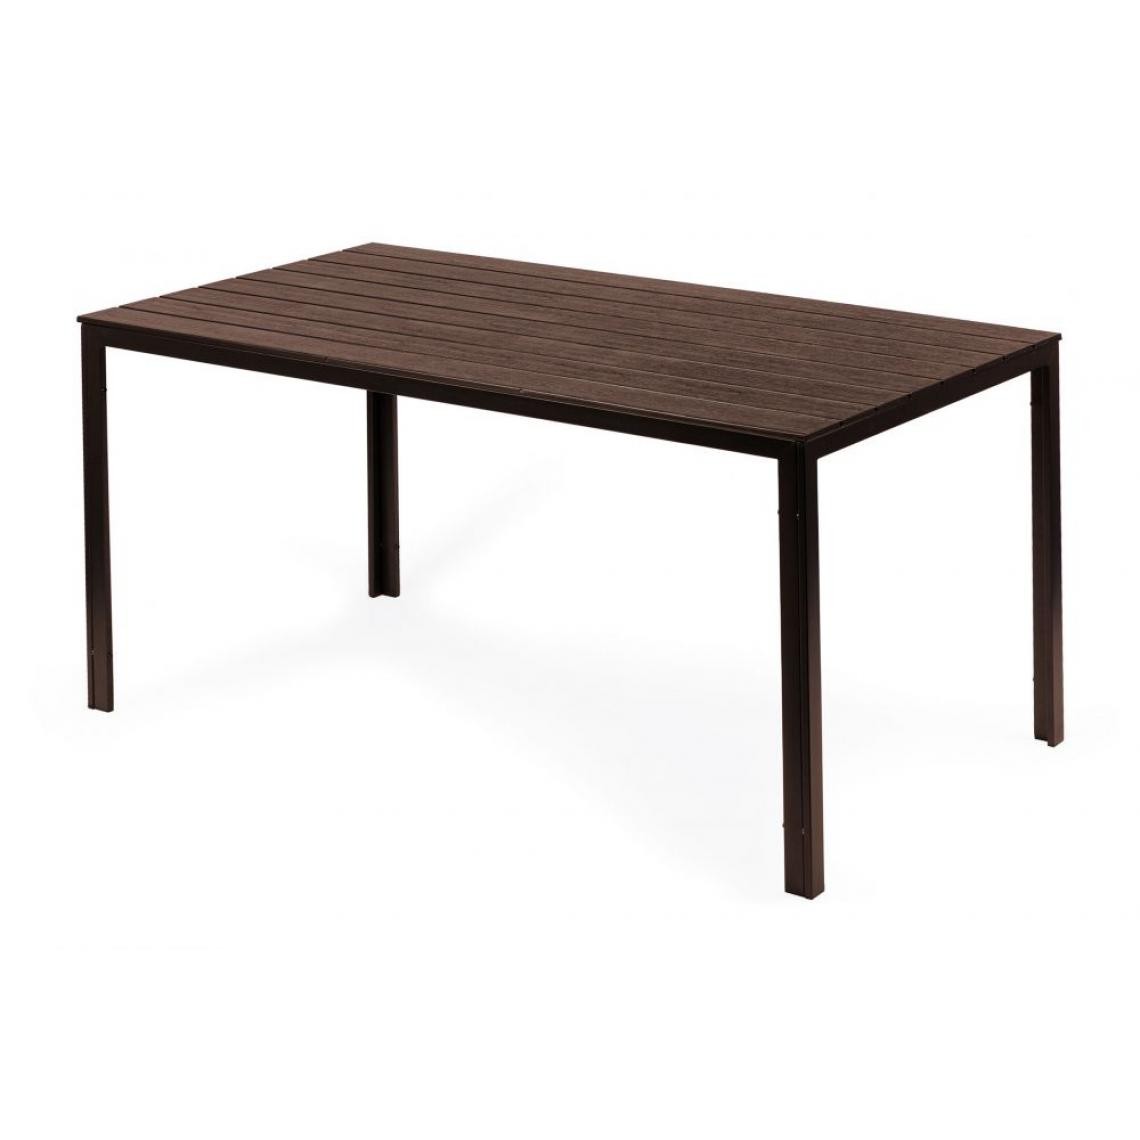 Hucoco - MSTORE - Table de jardin rectangulaire style moderne - 156x78x74 - Pieds en métal - Brun - Tables de jardin